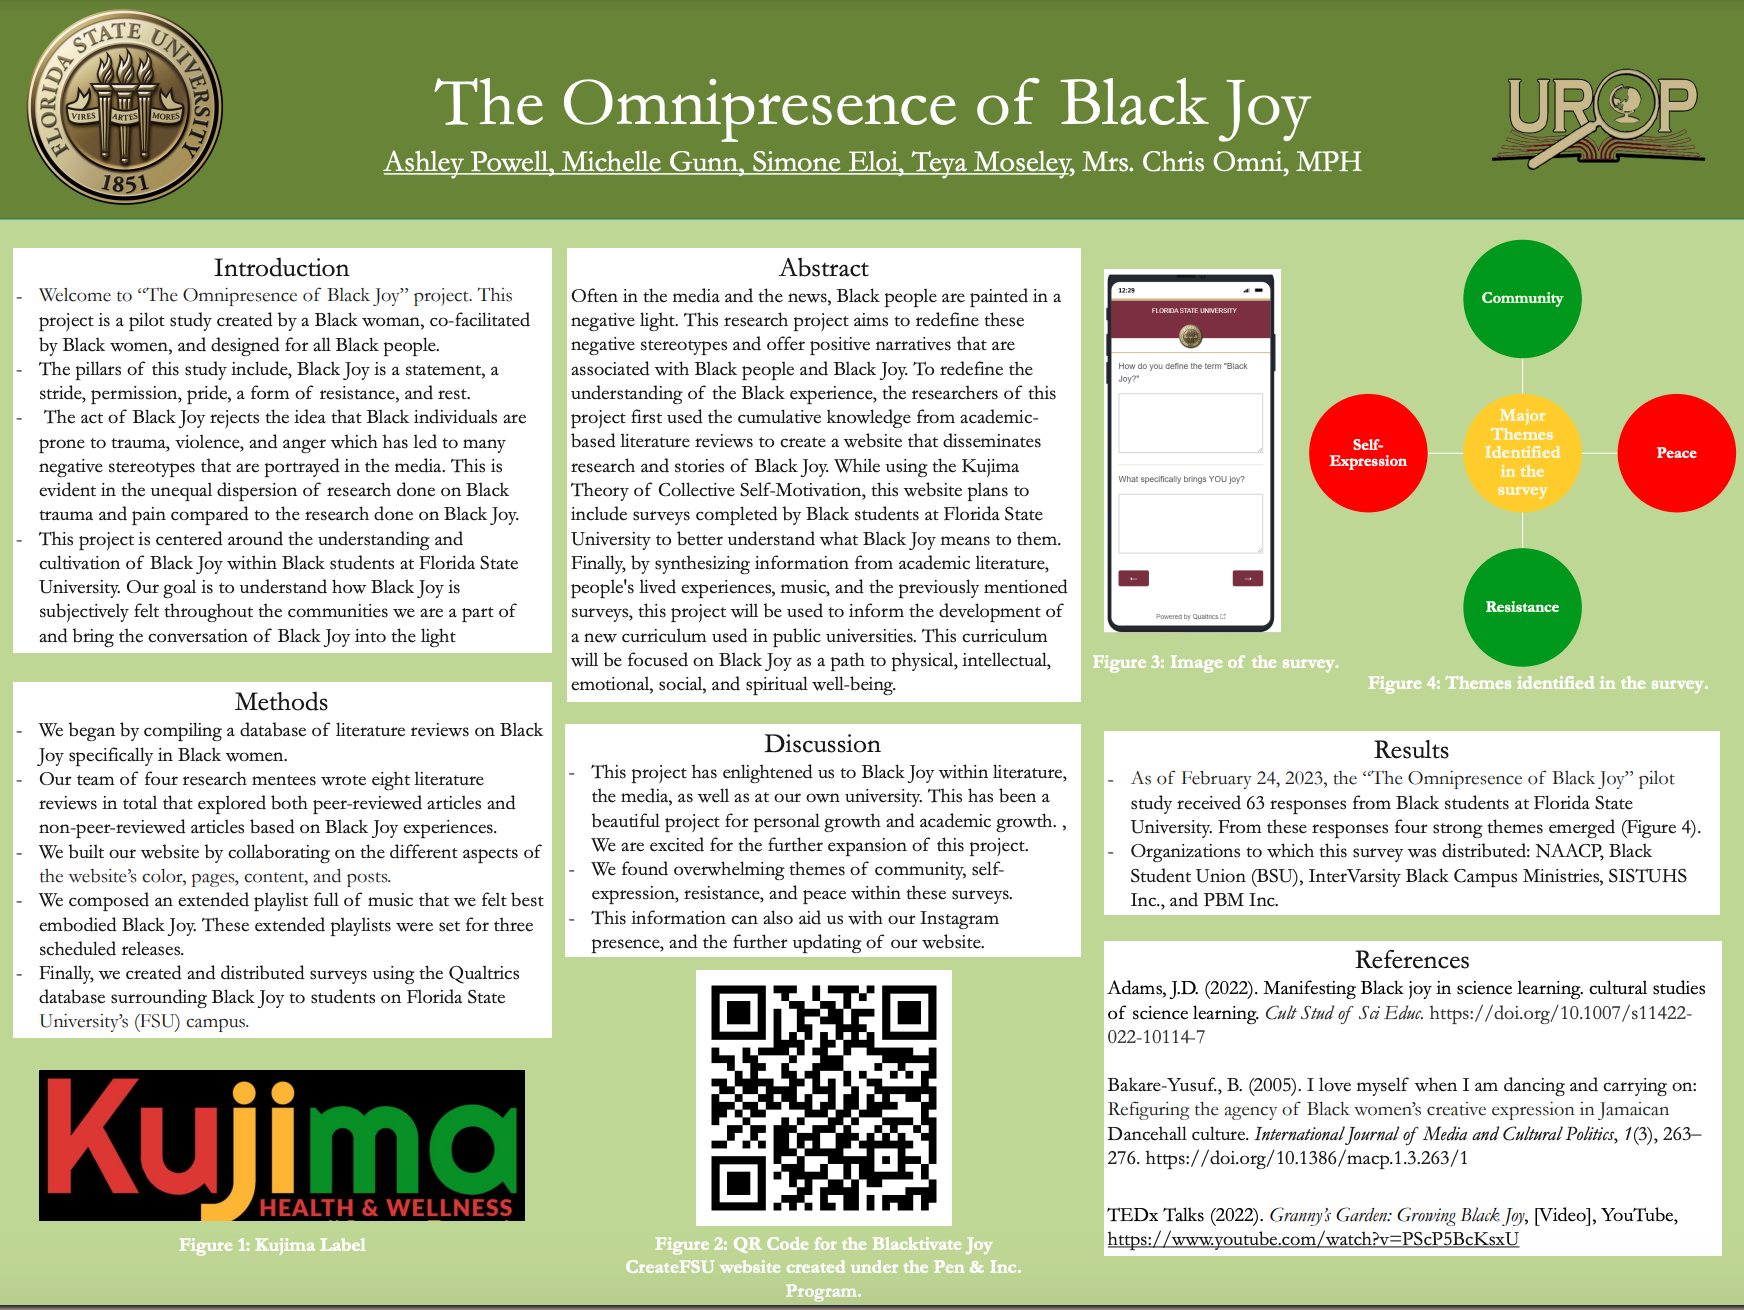 The Omniprescence of Black Joy.png